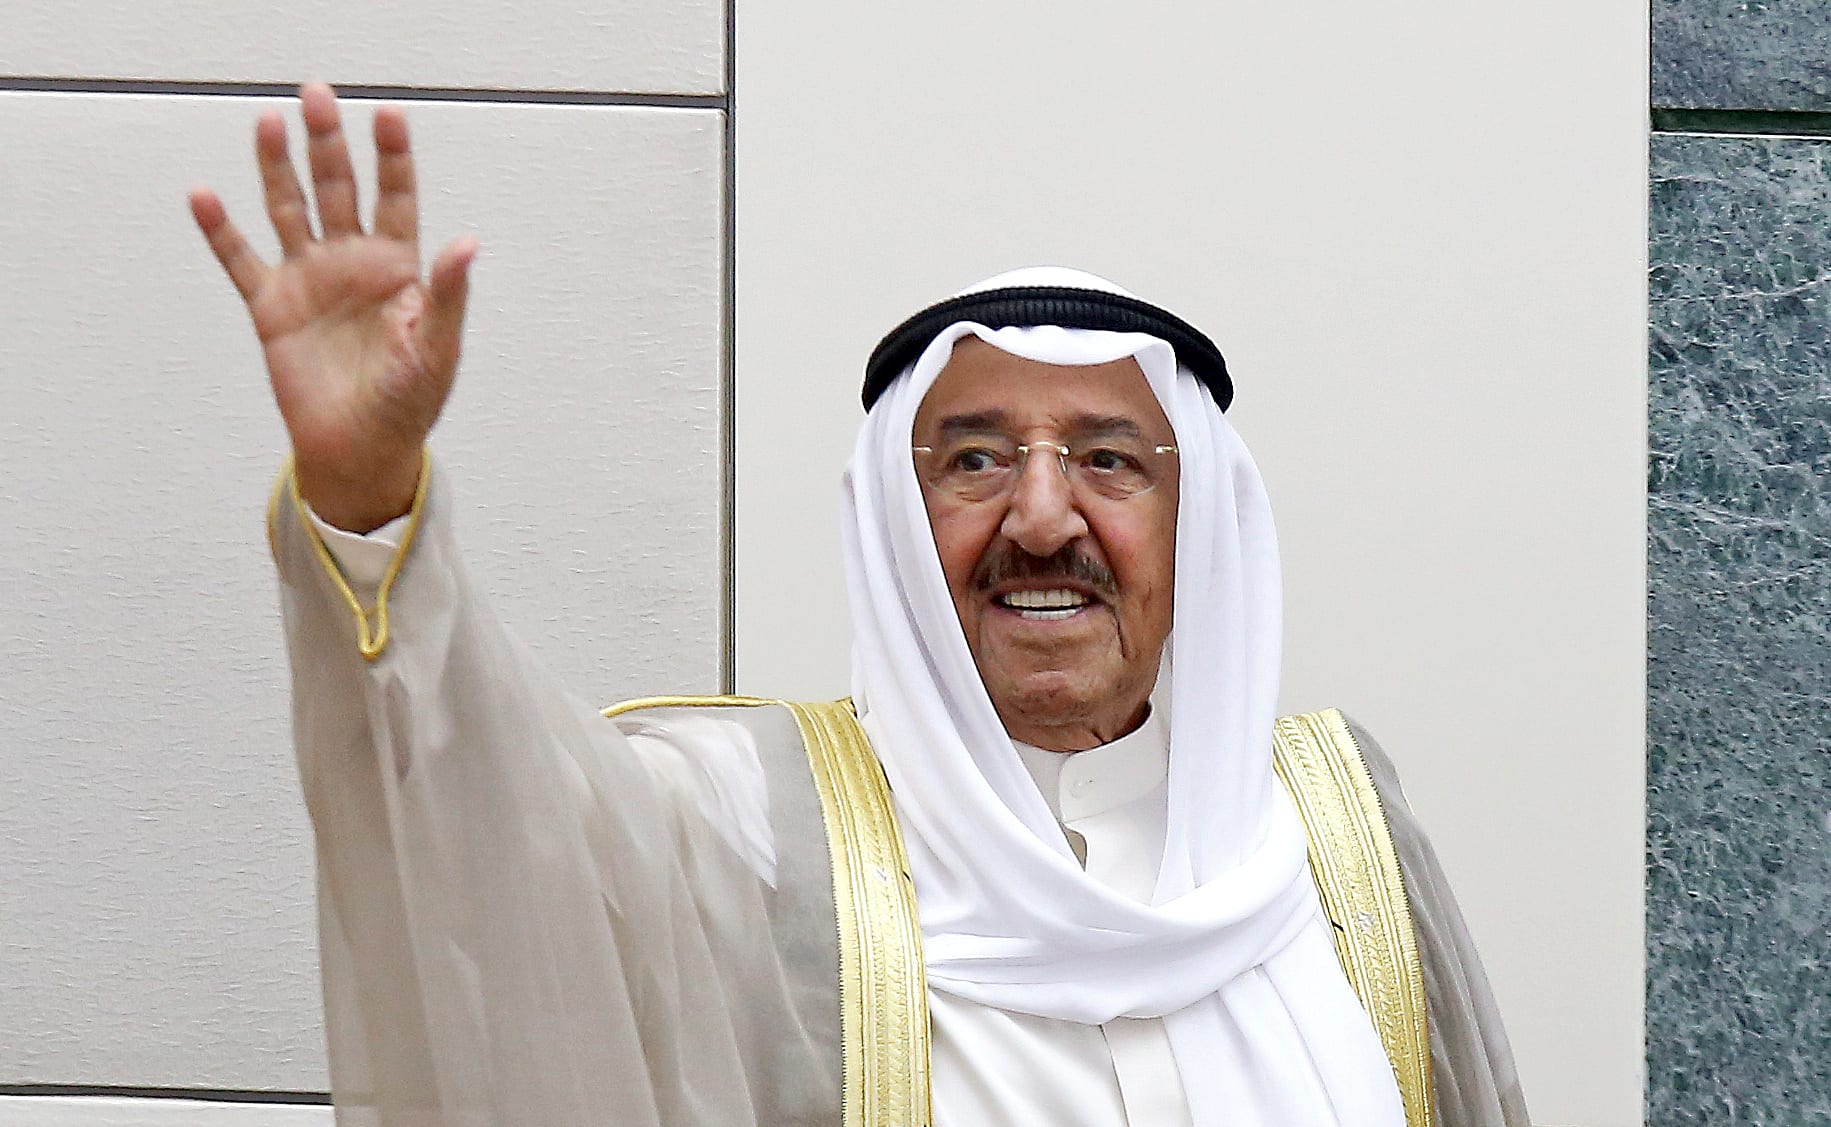 أمير الكويت يدعو قواته إلى الحذر والجهوزية ويحذر من "المستجدات الخطيرة" بالمنطقة